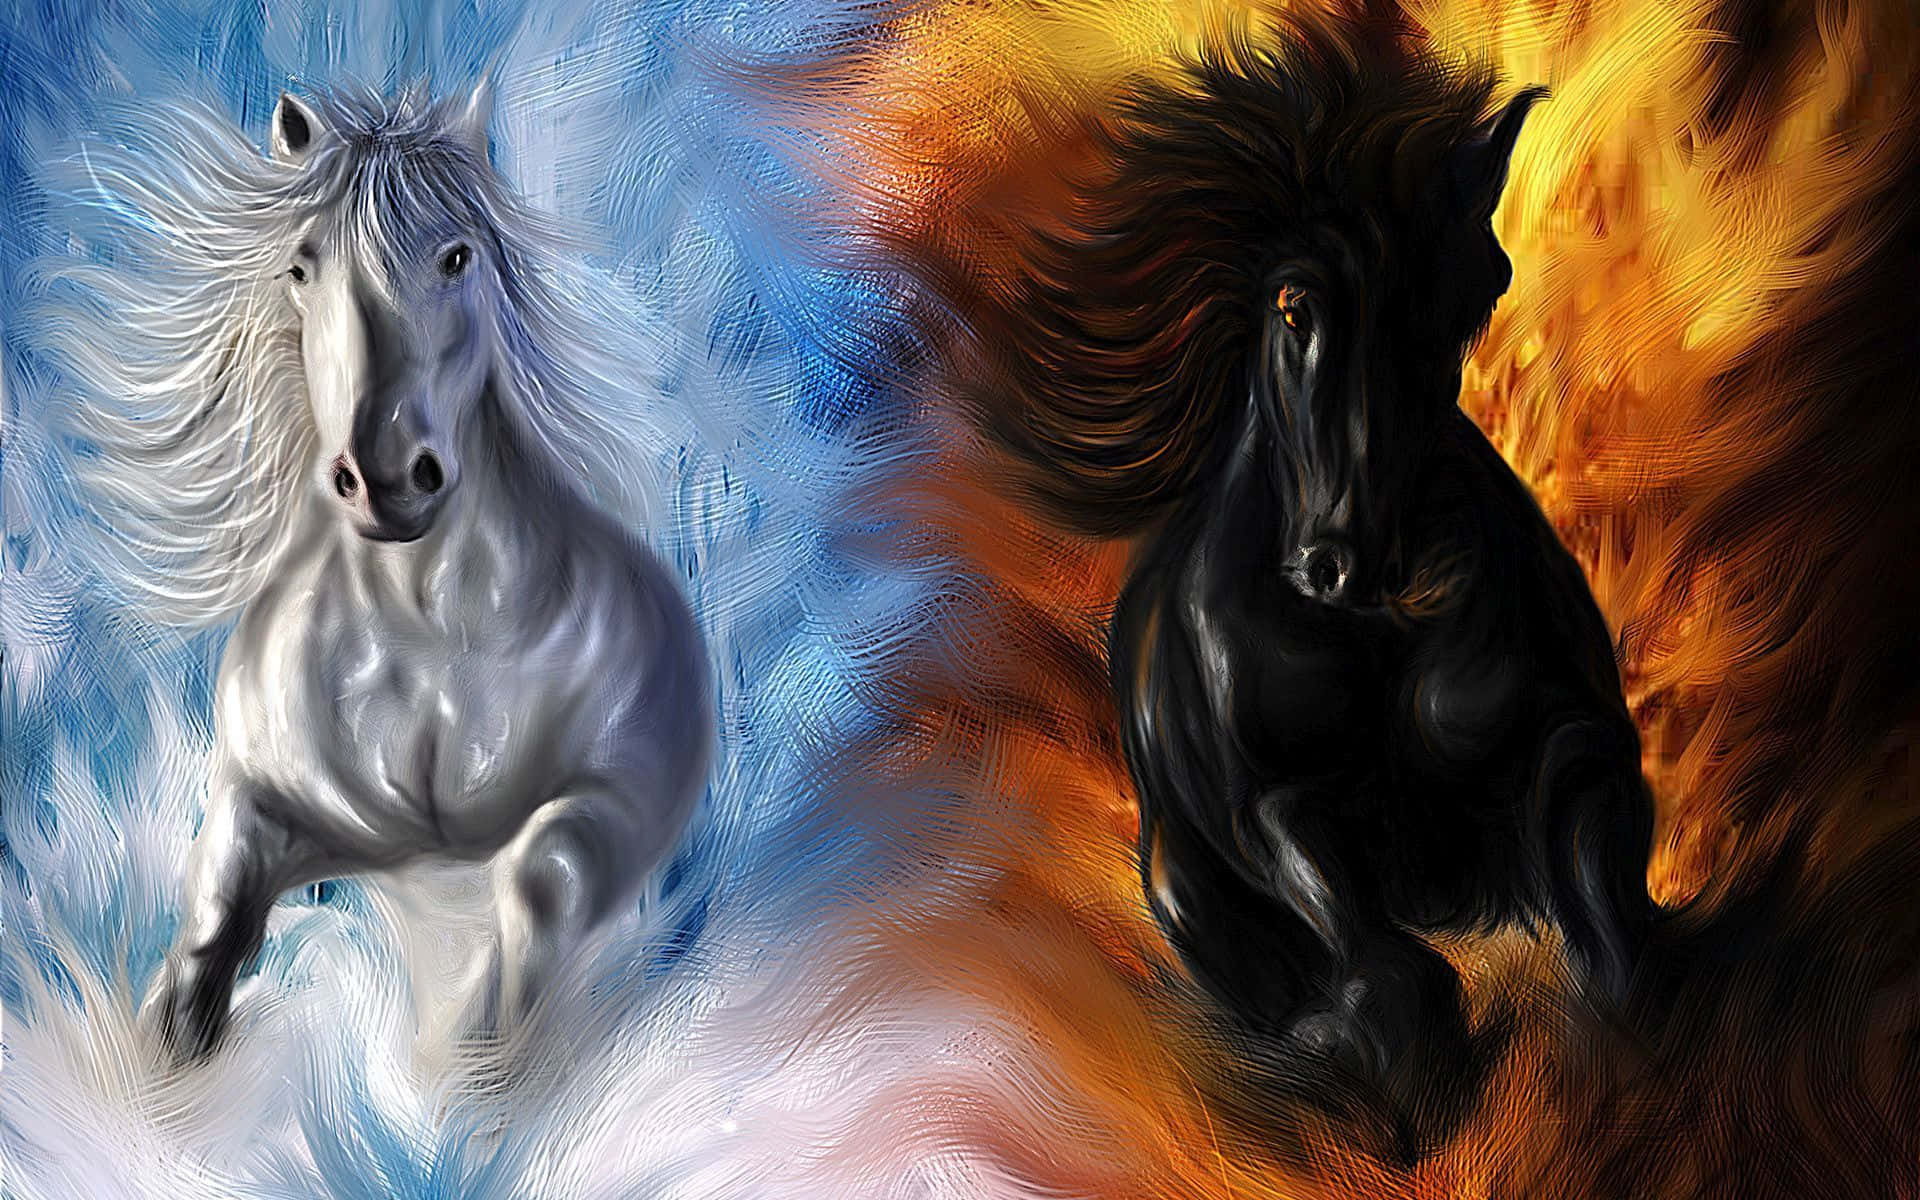 Cavallonero E Bianco: Il Paradiso E L'inferno Nell'arte Di Un'immagine